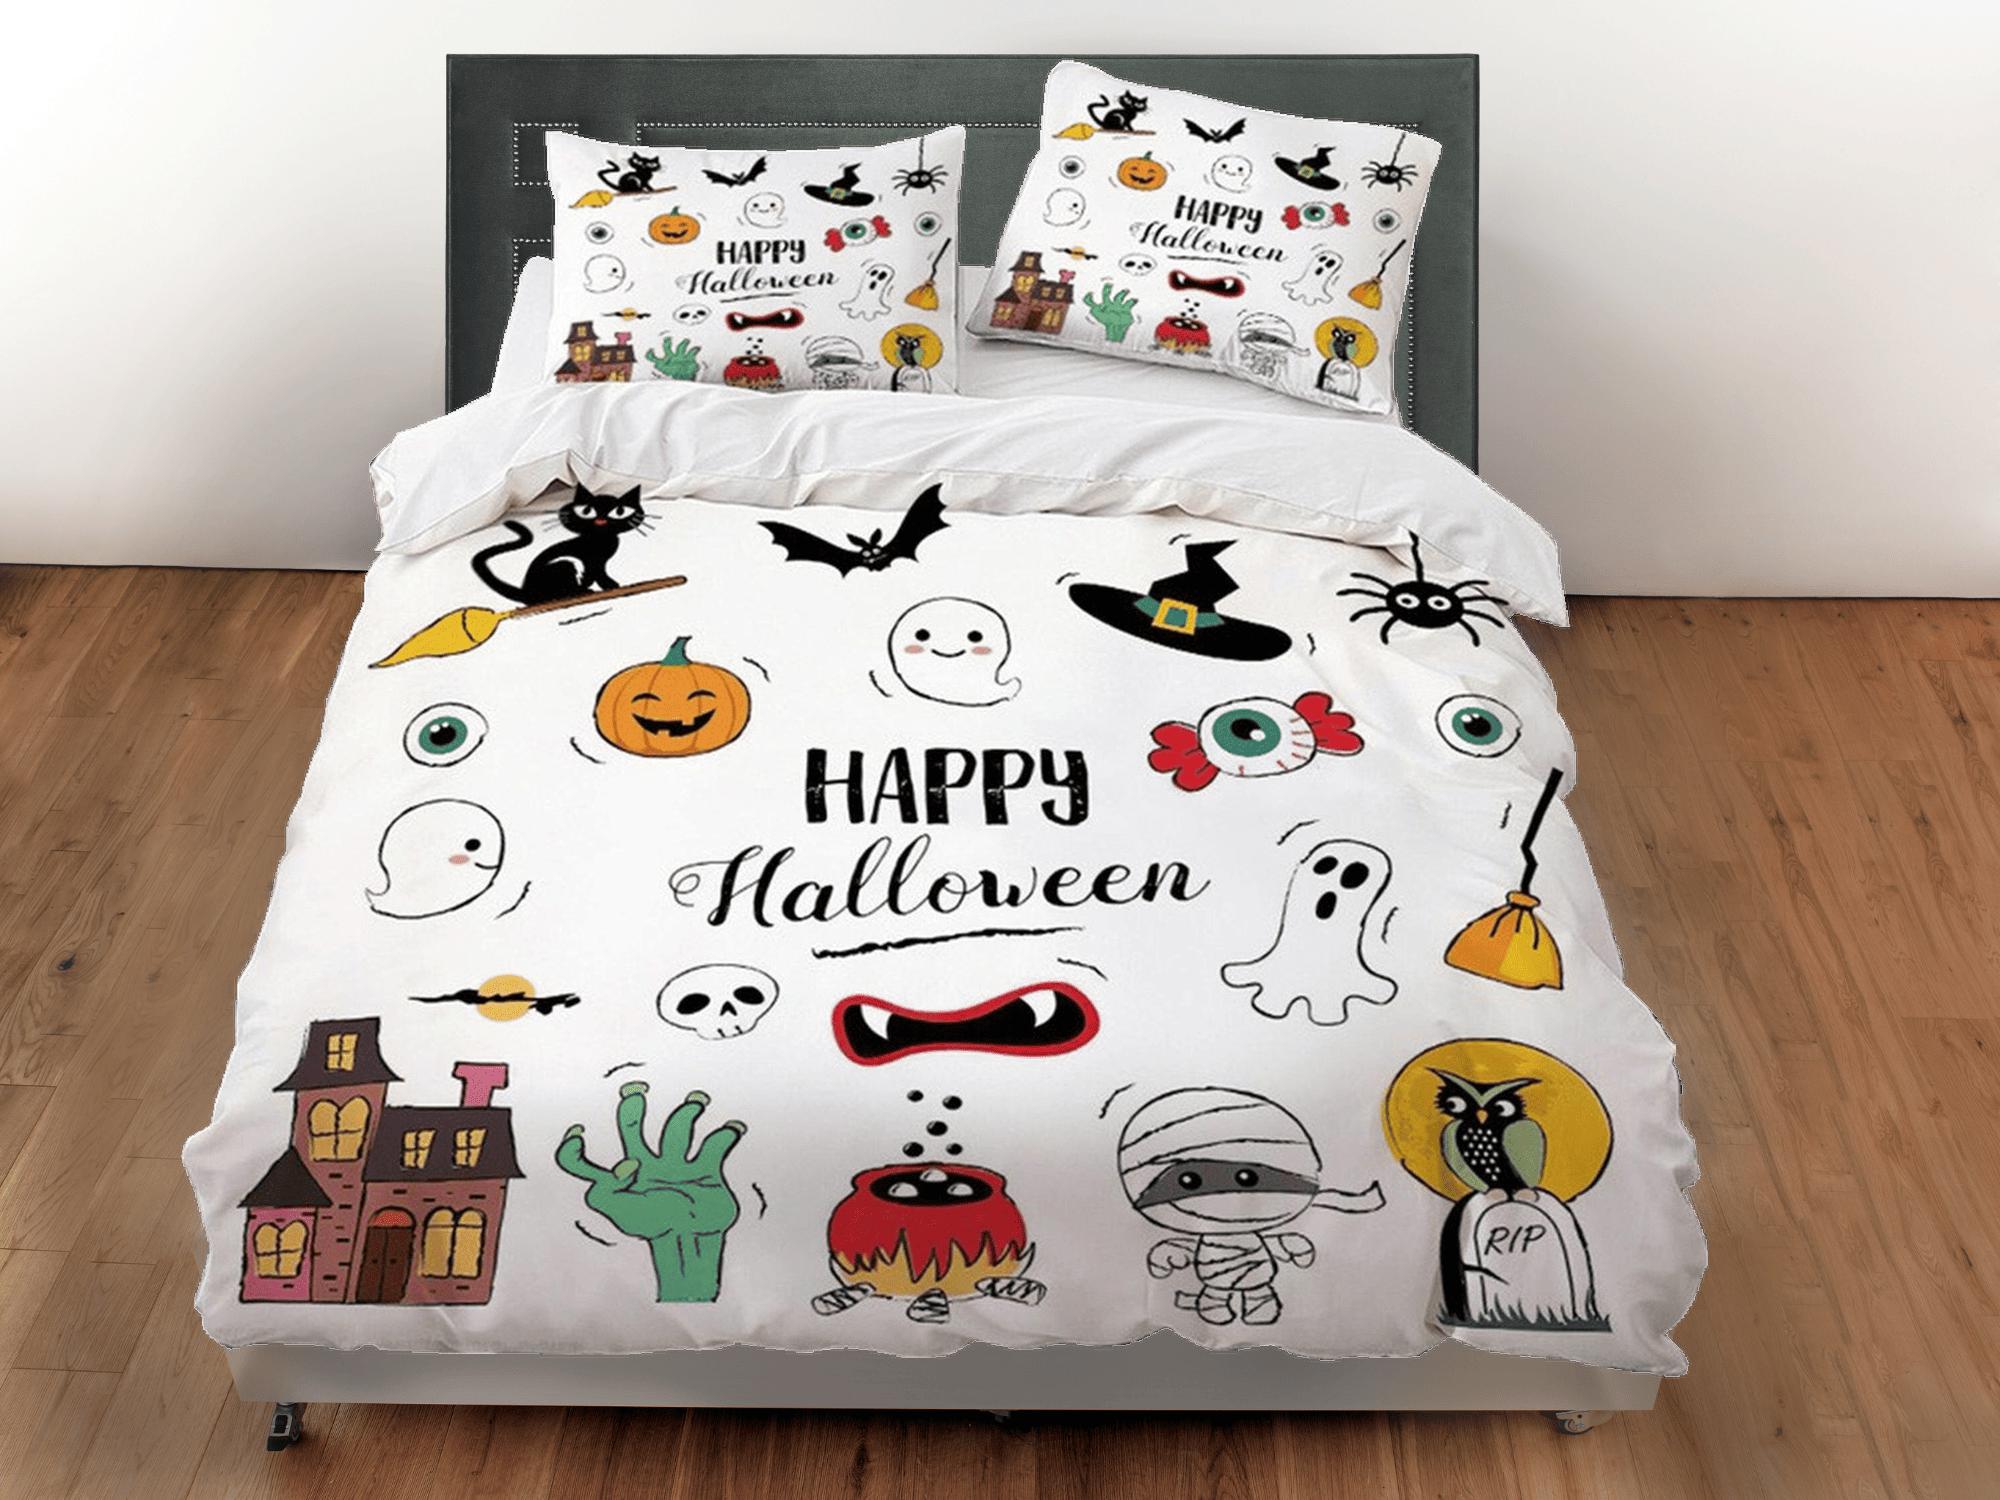 daintyduvet Happy halloween cute full size bedding & pillowcase, duvet cover set dorm bedding, halloween decor, nursery toddler bedding, halloween gift